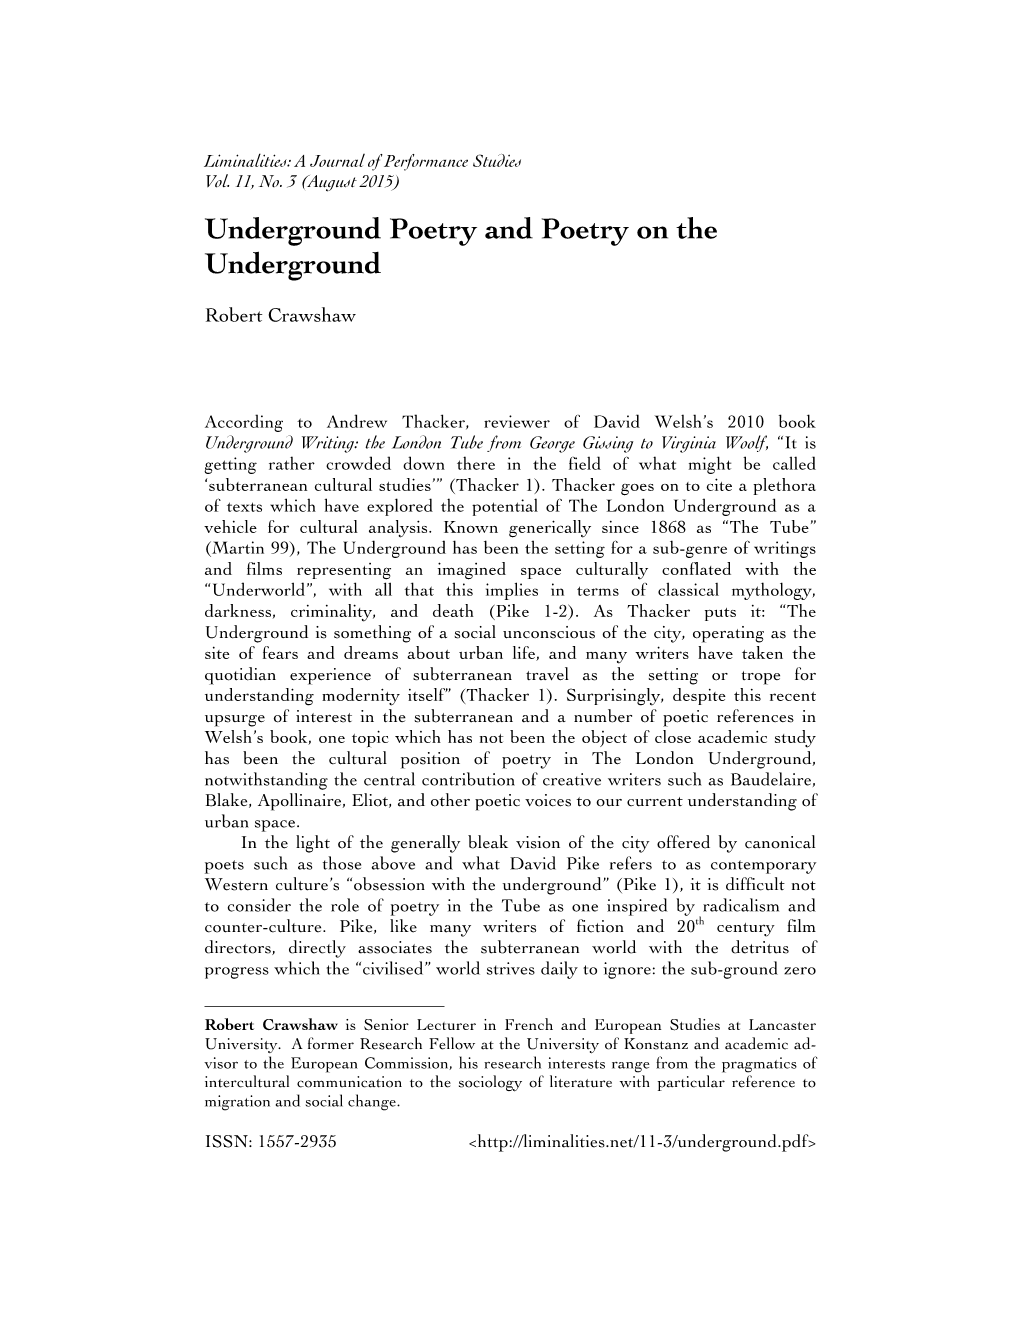 Underground Poetry and Poetry on the Underground